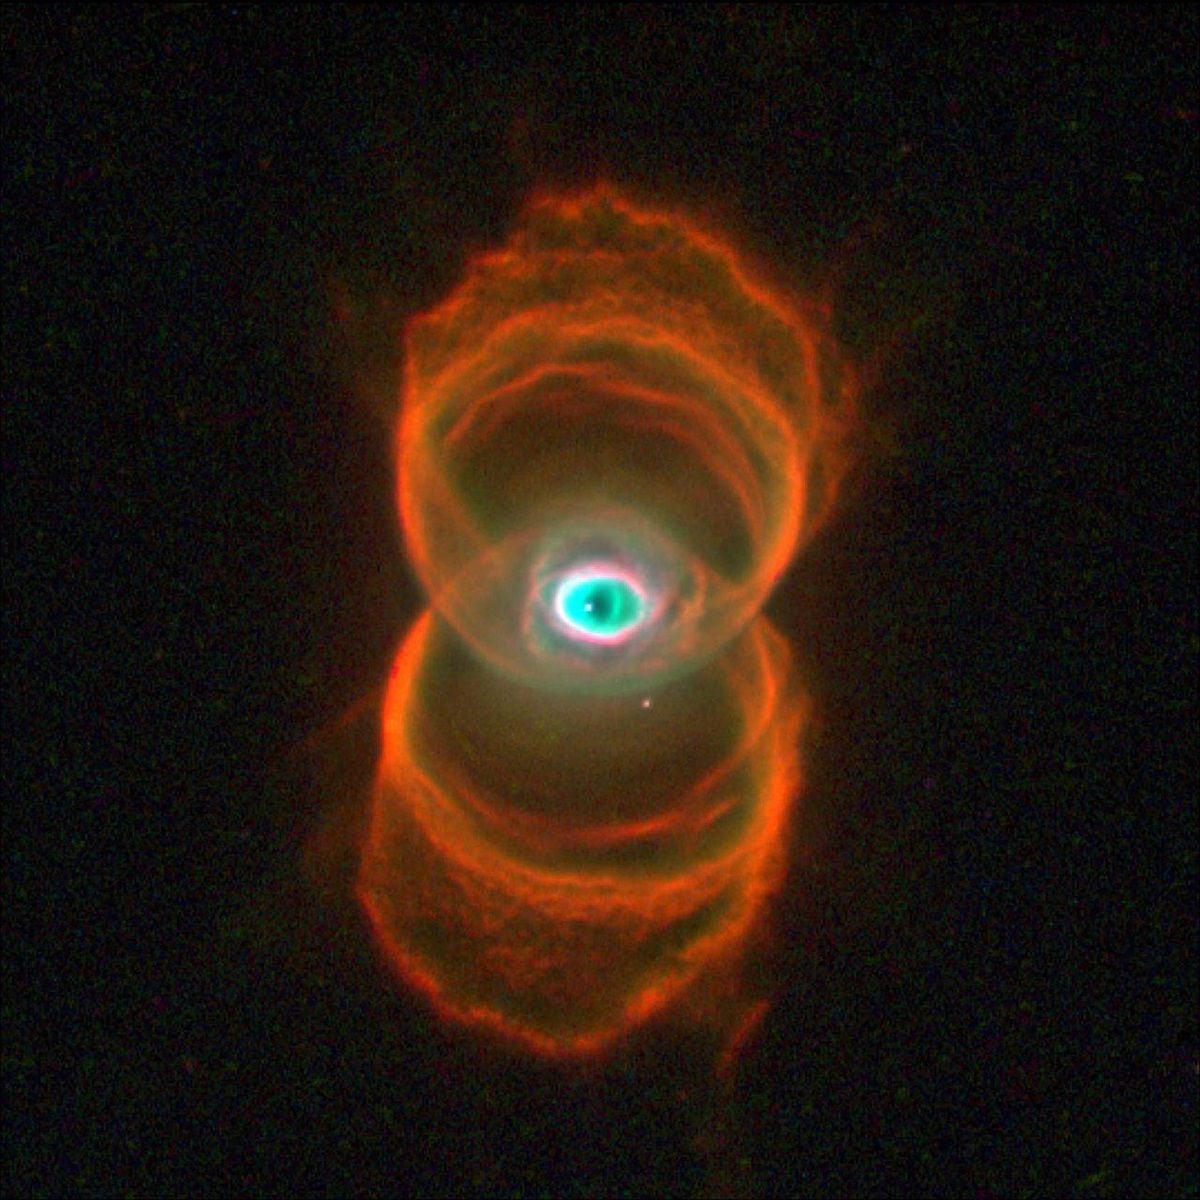 telescopio espacial hubble cumple 34 años y la nasa publica la imagen del “reloj de arena” que encontró a 8 mil años luz